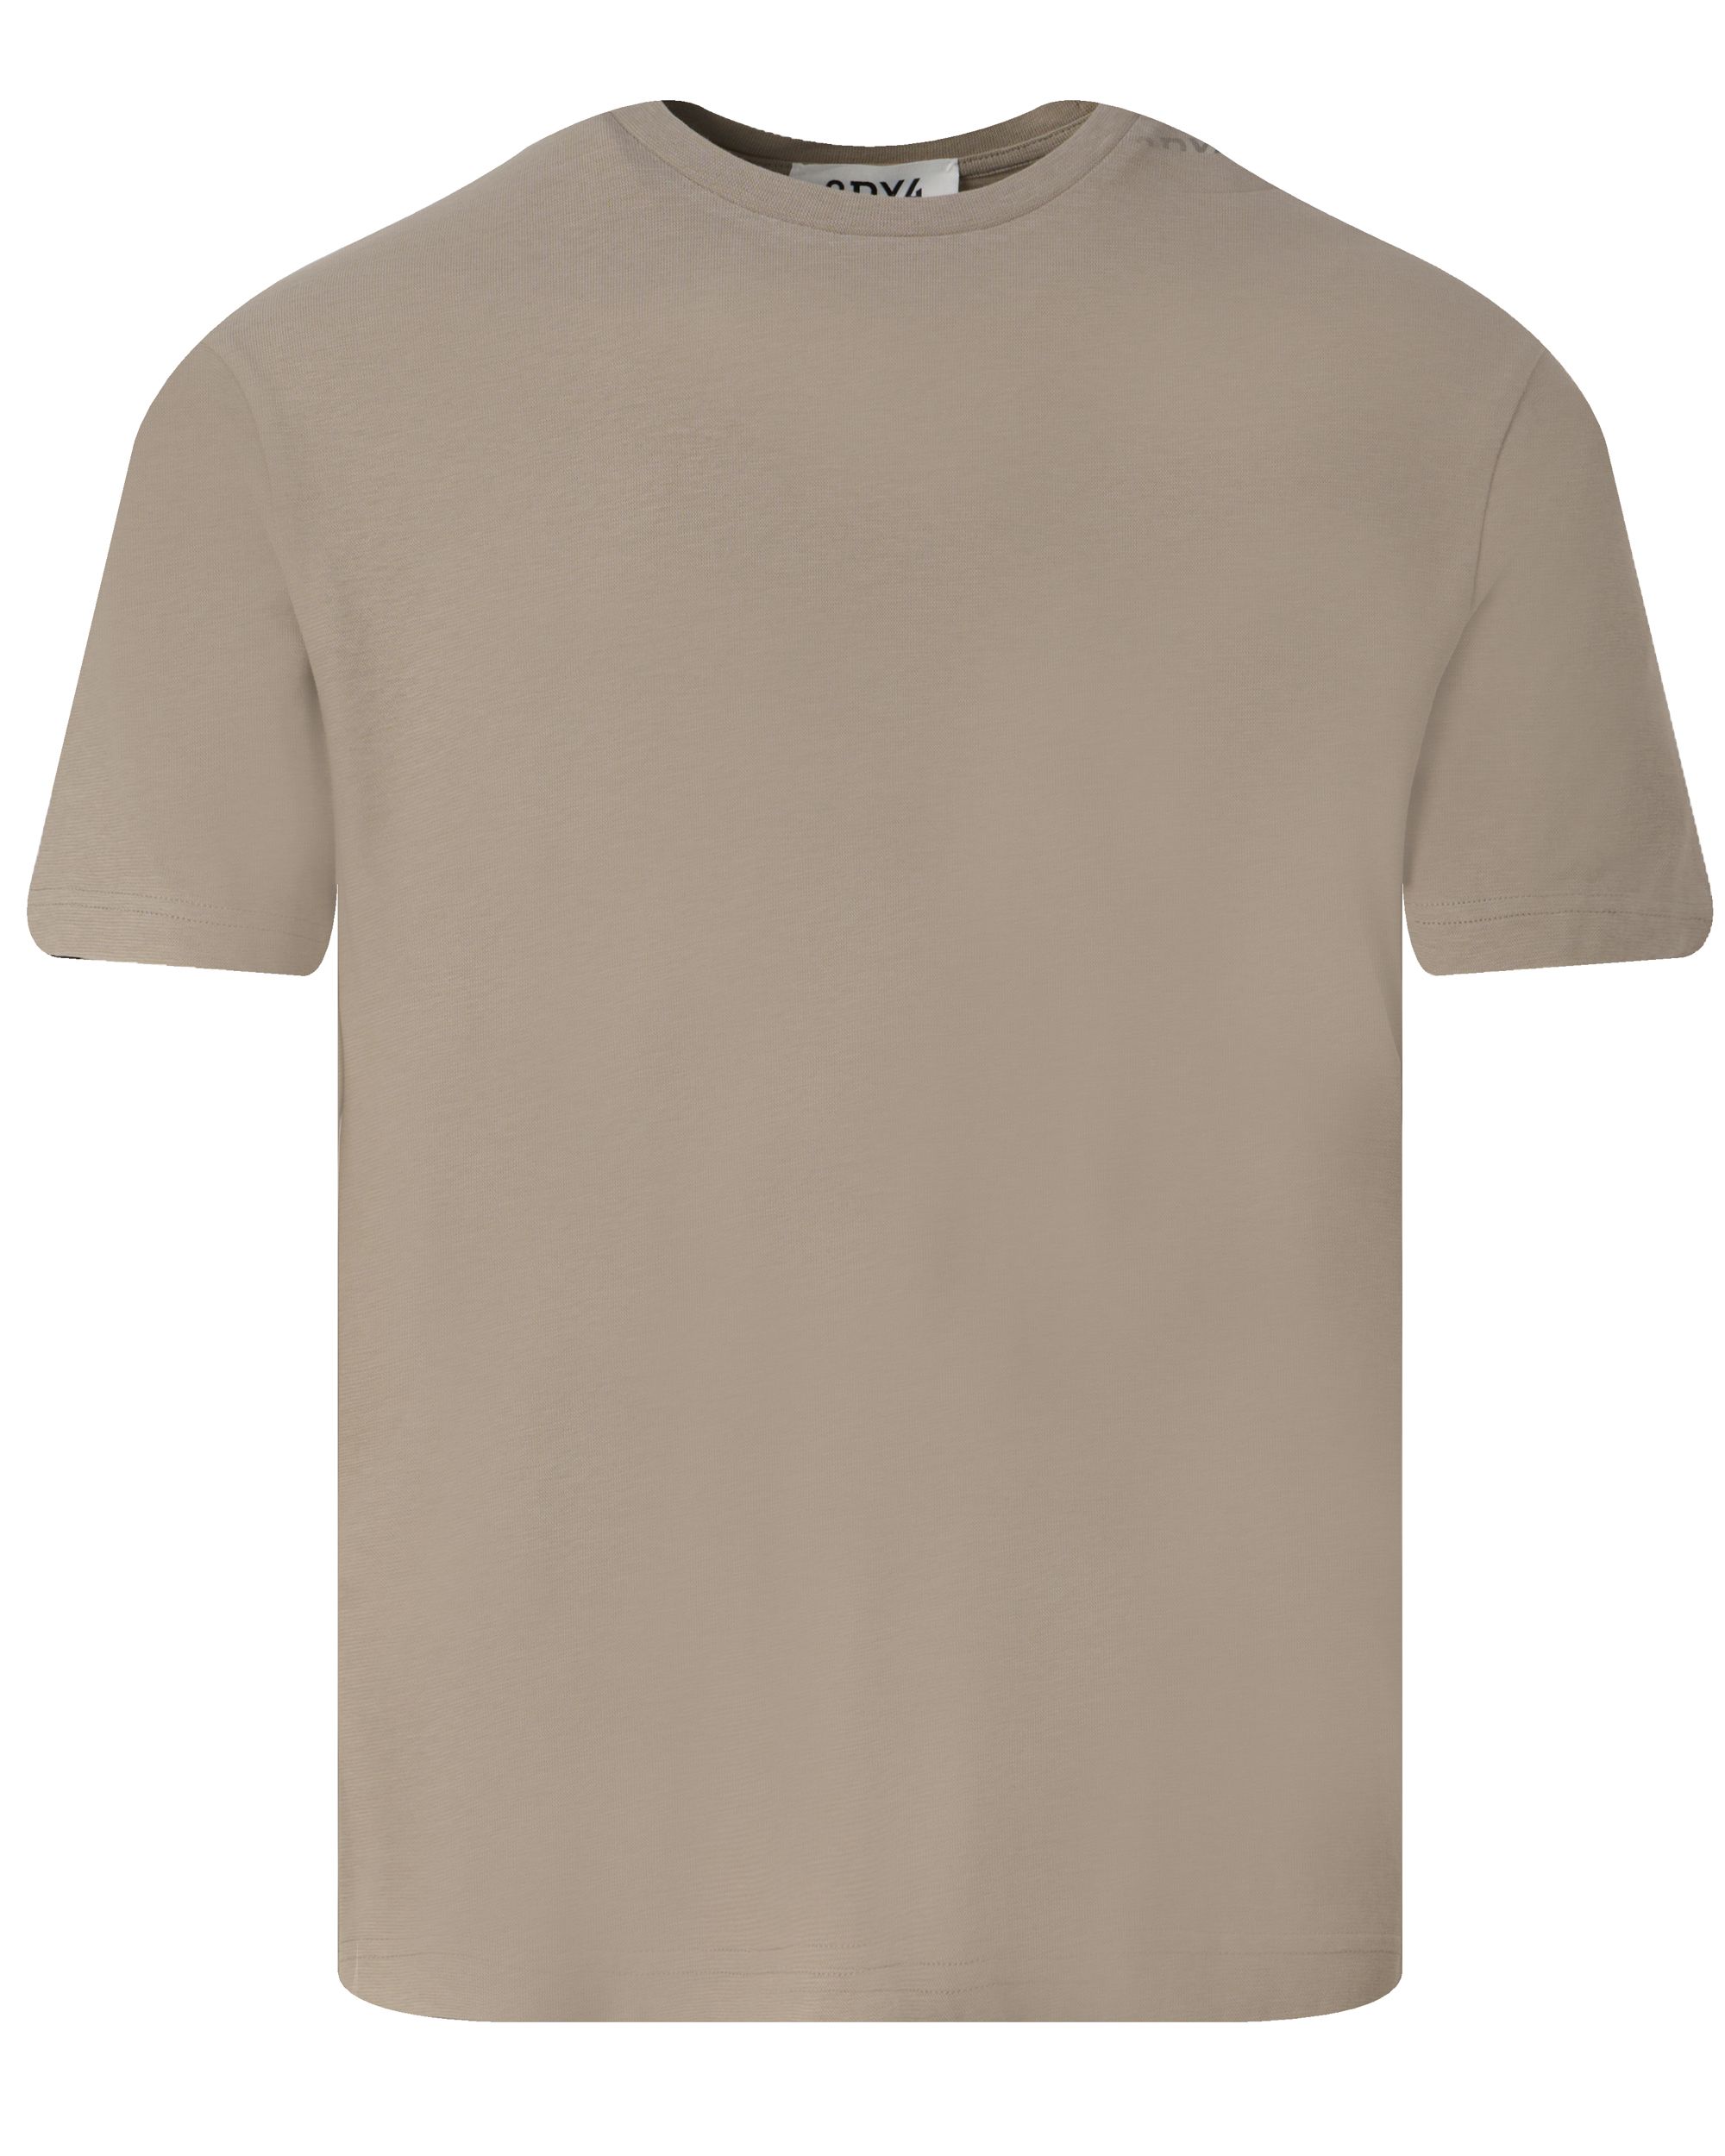 Drykorn Gilberd T-shirt KM Bruin 093451-001-L